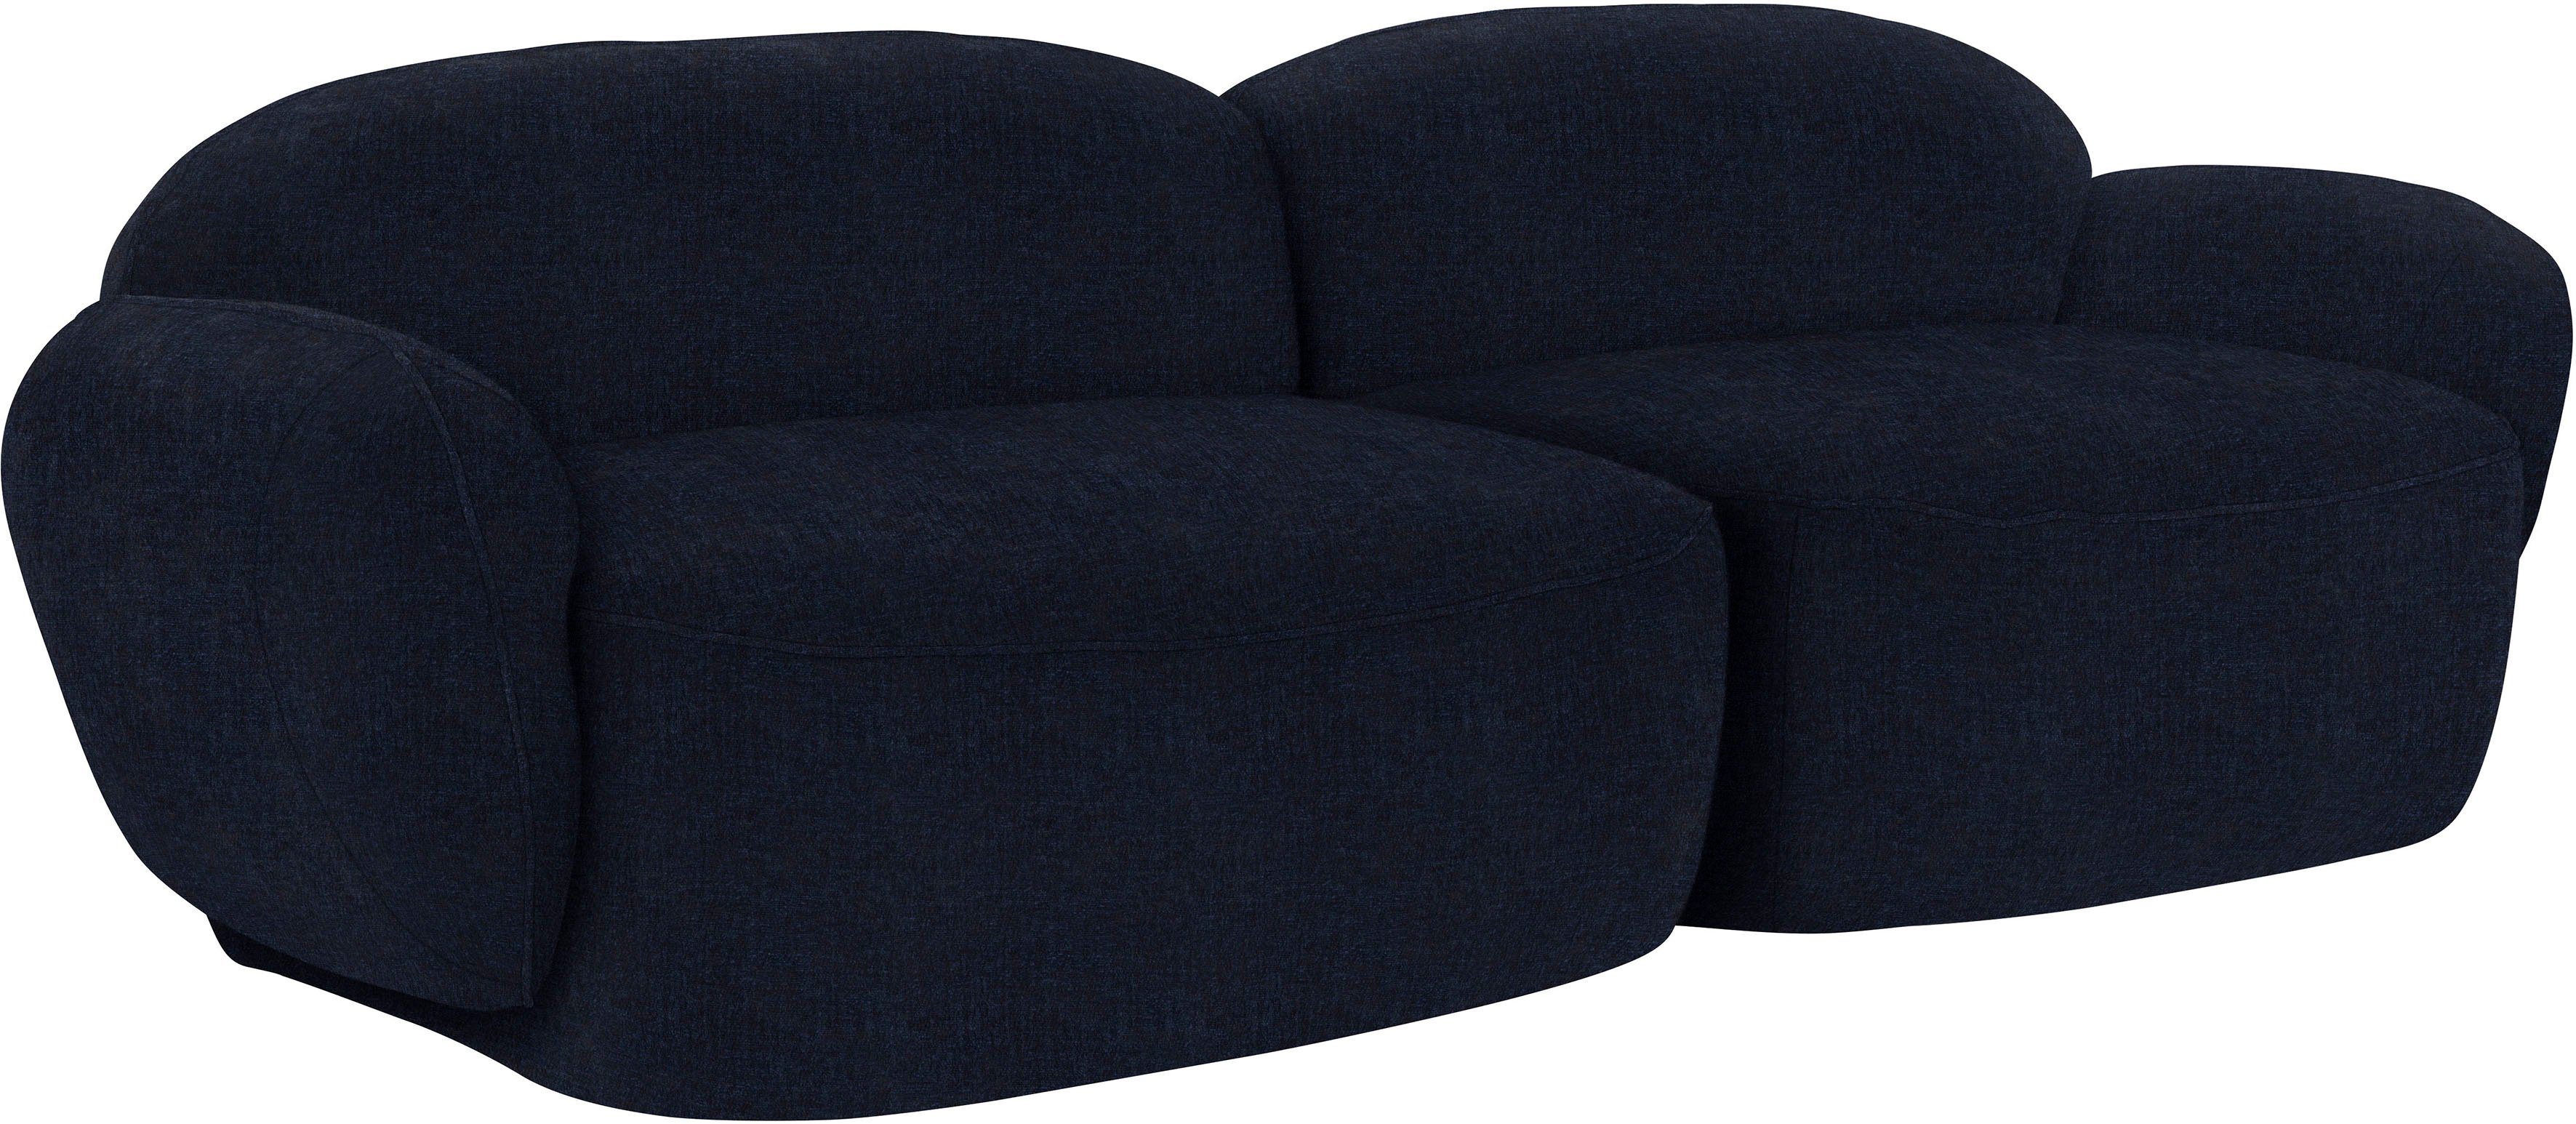 furninova 2,5-Sitzer durch Memoryschaum, im komfortabel Bubble, Design skandinavischen